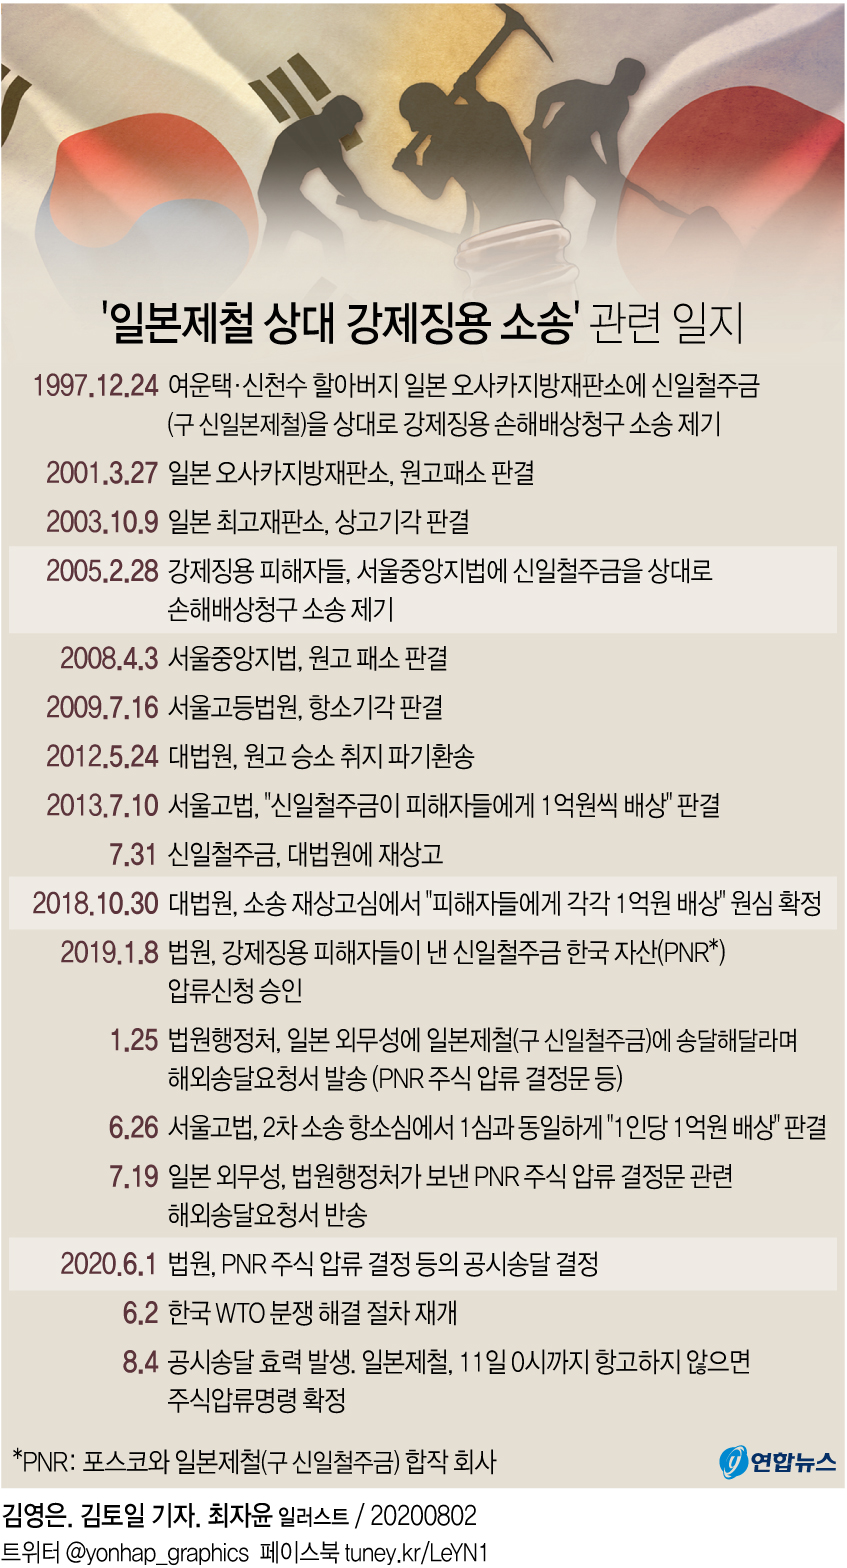 [그래픽] '일본제철 상대 강제징용 소송' 관련 일지